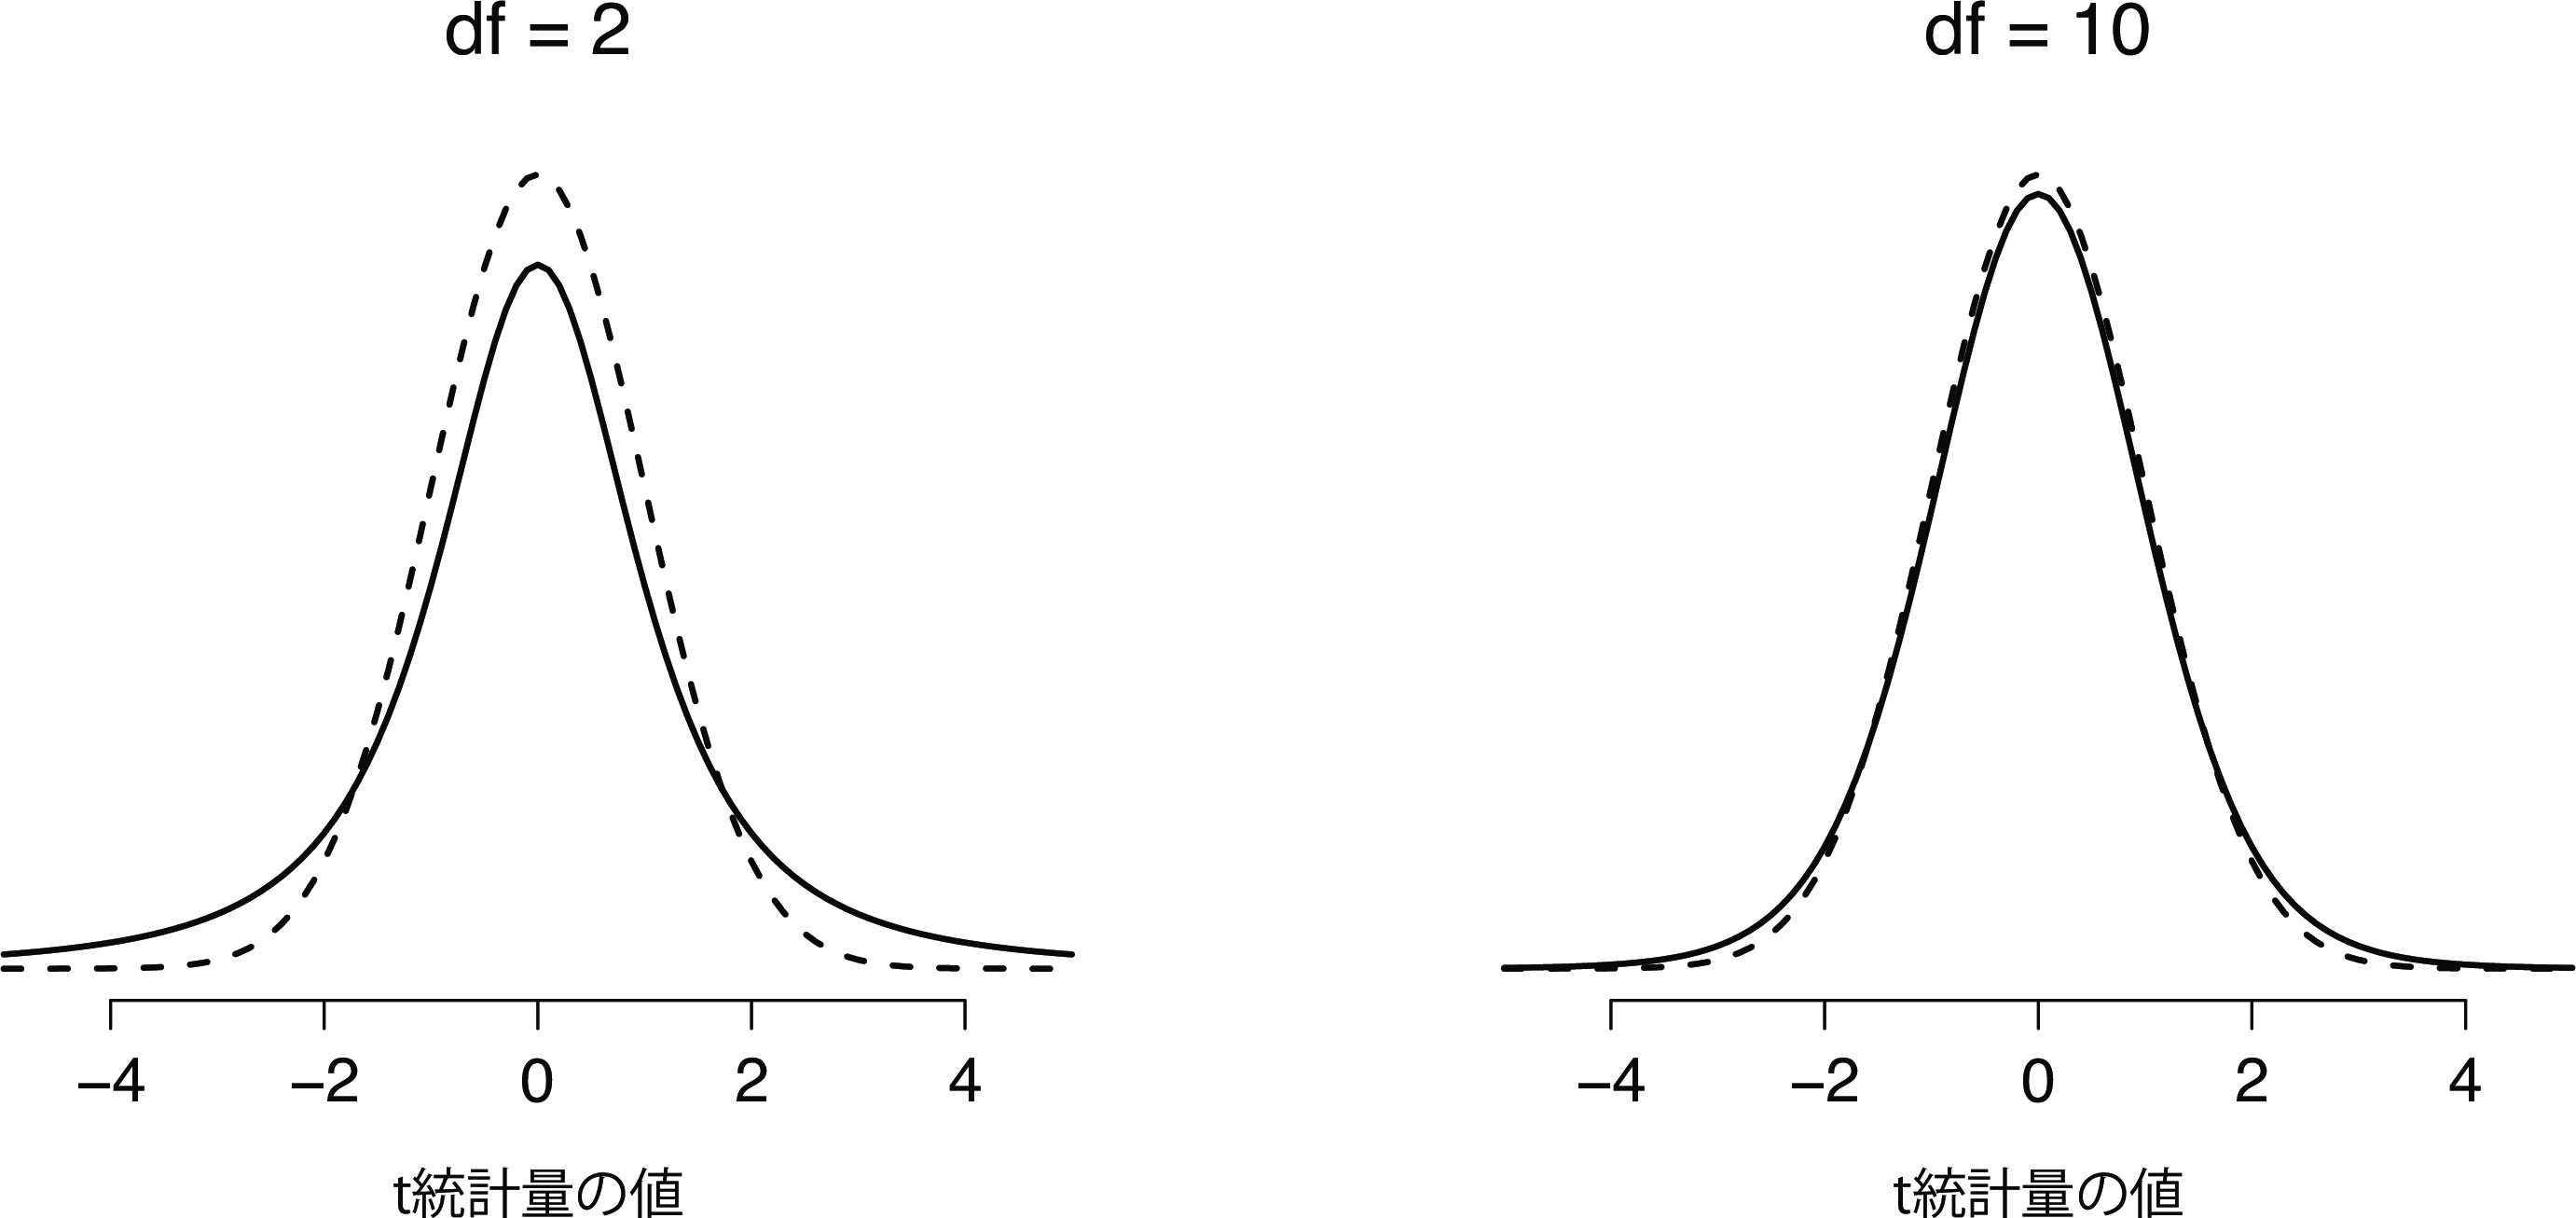 自由度2（左）と自由度10（右）の\(t\)分布，および比較目的で標準正規分布（平均0と標準偏差1）点線でプロットしたもの。\(t\)分布は正規分布よりも重い裾（高い尖度）を持つことに注意。この違いは，自由度が非常に小さい場合にはかなり誇張されるが，自由度が大きな値の場合は無視できる。言い換えると，自由度が大きな値の場合，\(t\)分布は本質的に正規分布と同じである。